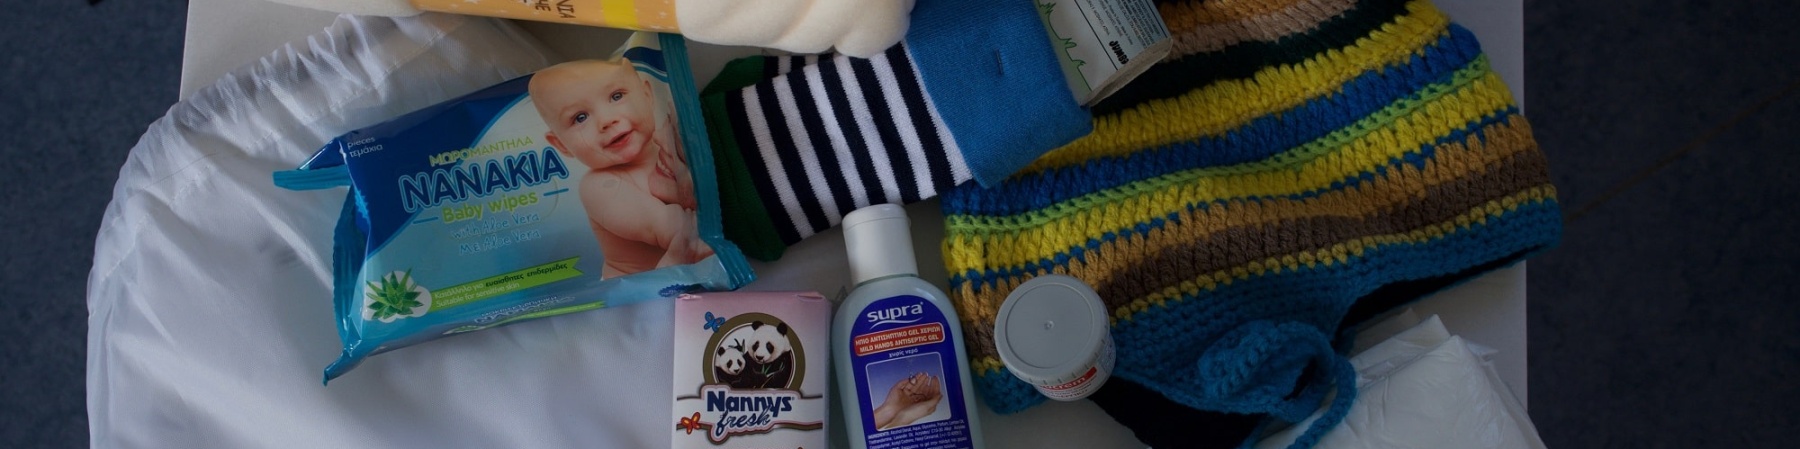 kit per genitori e neonato dove ci sono salviette, coperte, calzine, pannolini etc